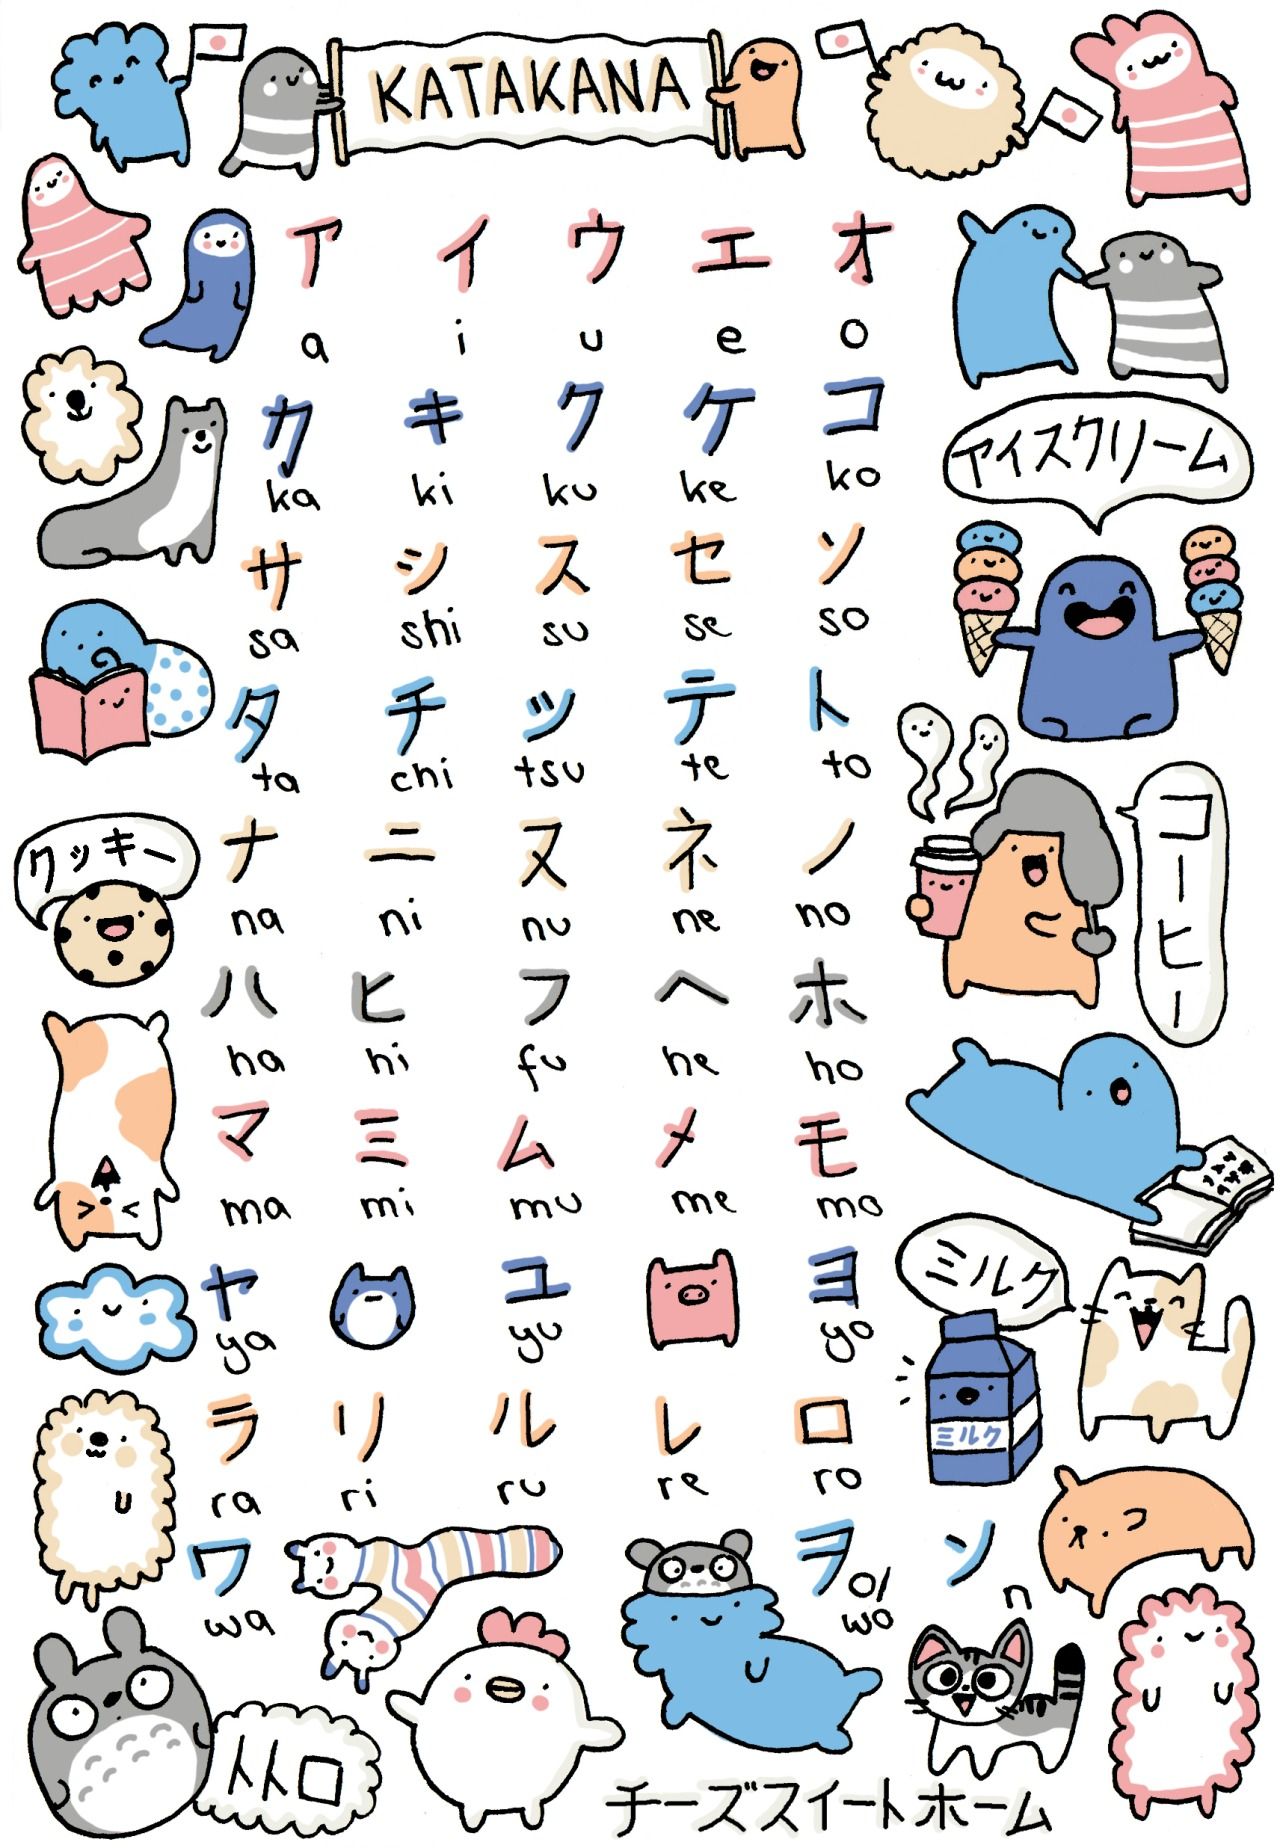 Bảng chữ cái Katakana dễ thương đẹp nhất